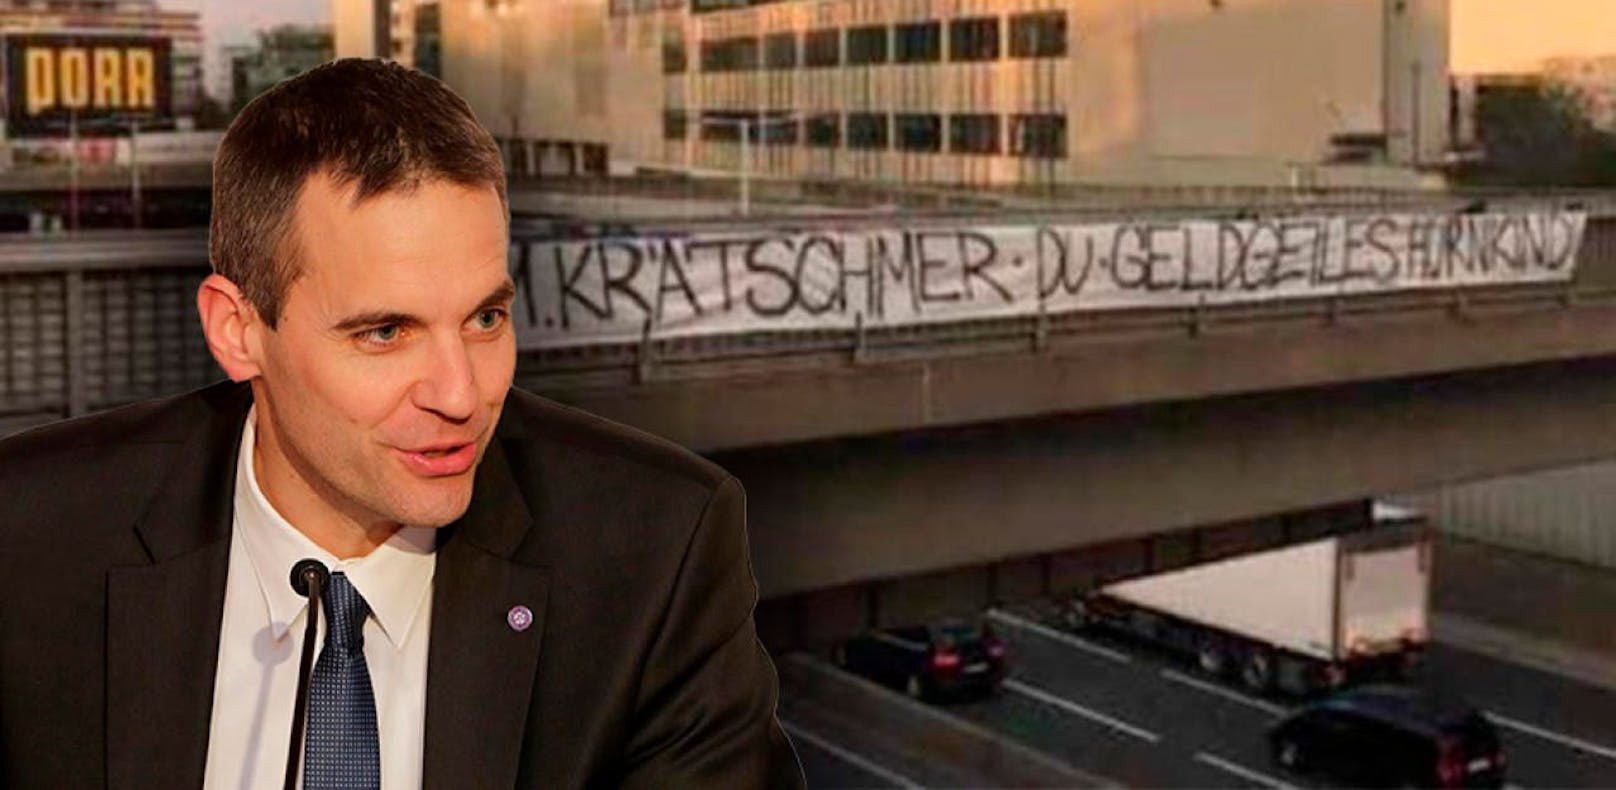 Austrias AG-Vorstand Markus Kraetschmer wird weit unter der Gürtellinie beleidigt. 